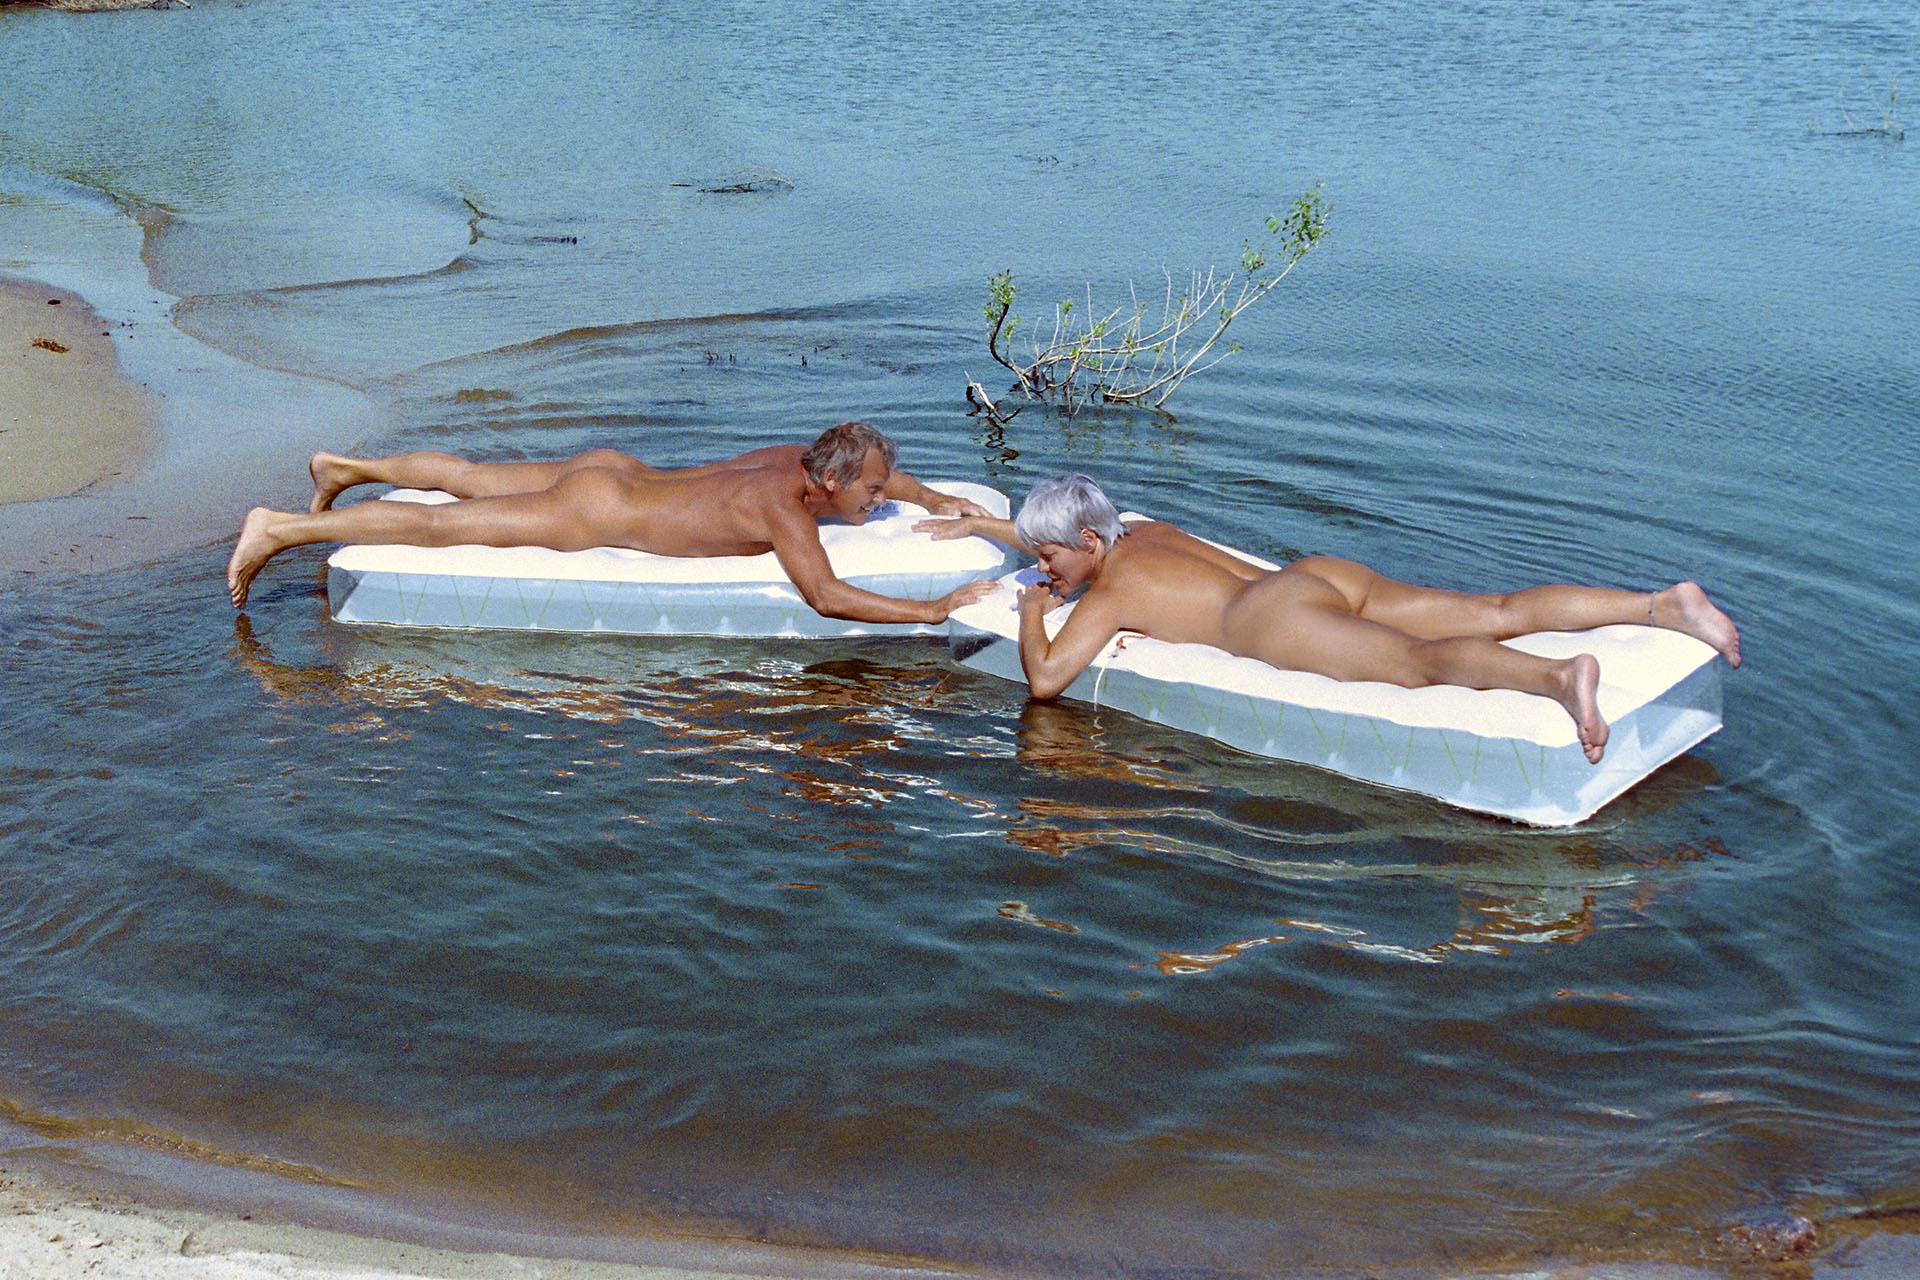 Nudism - naked and free - naked couple sunbathing